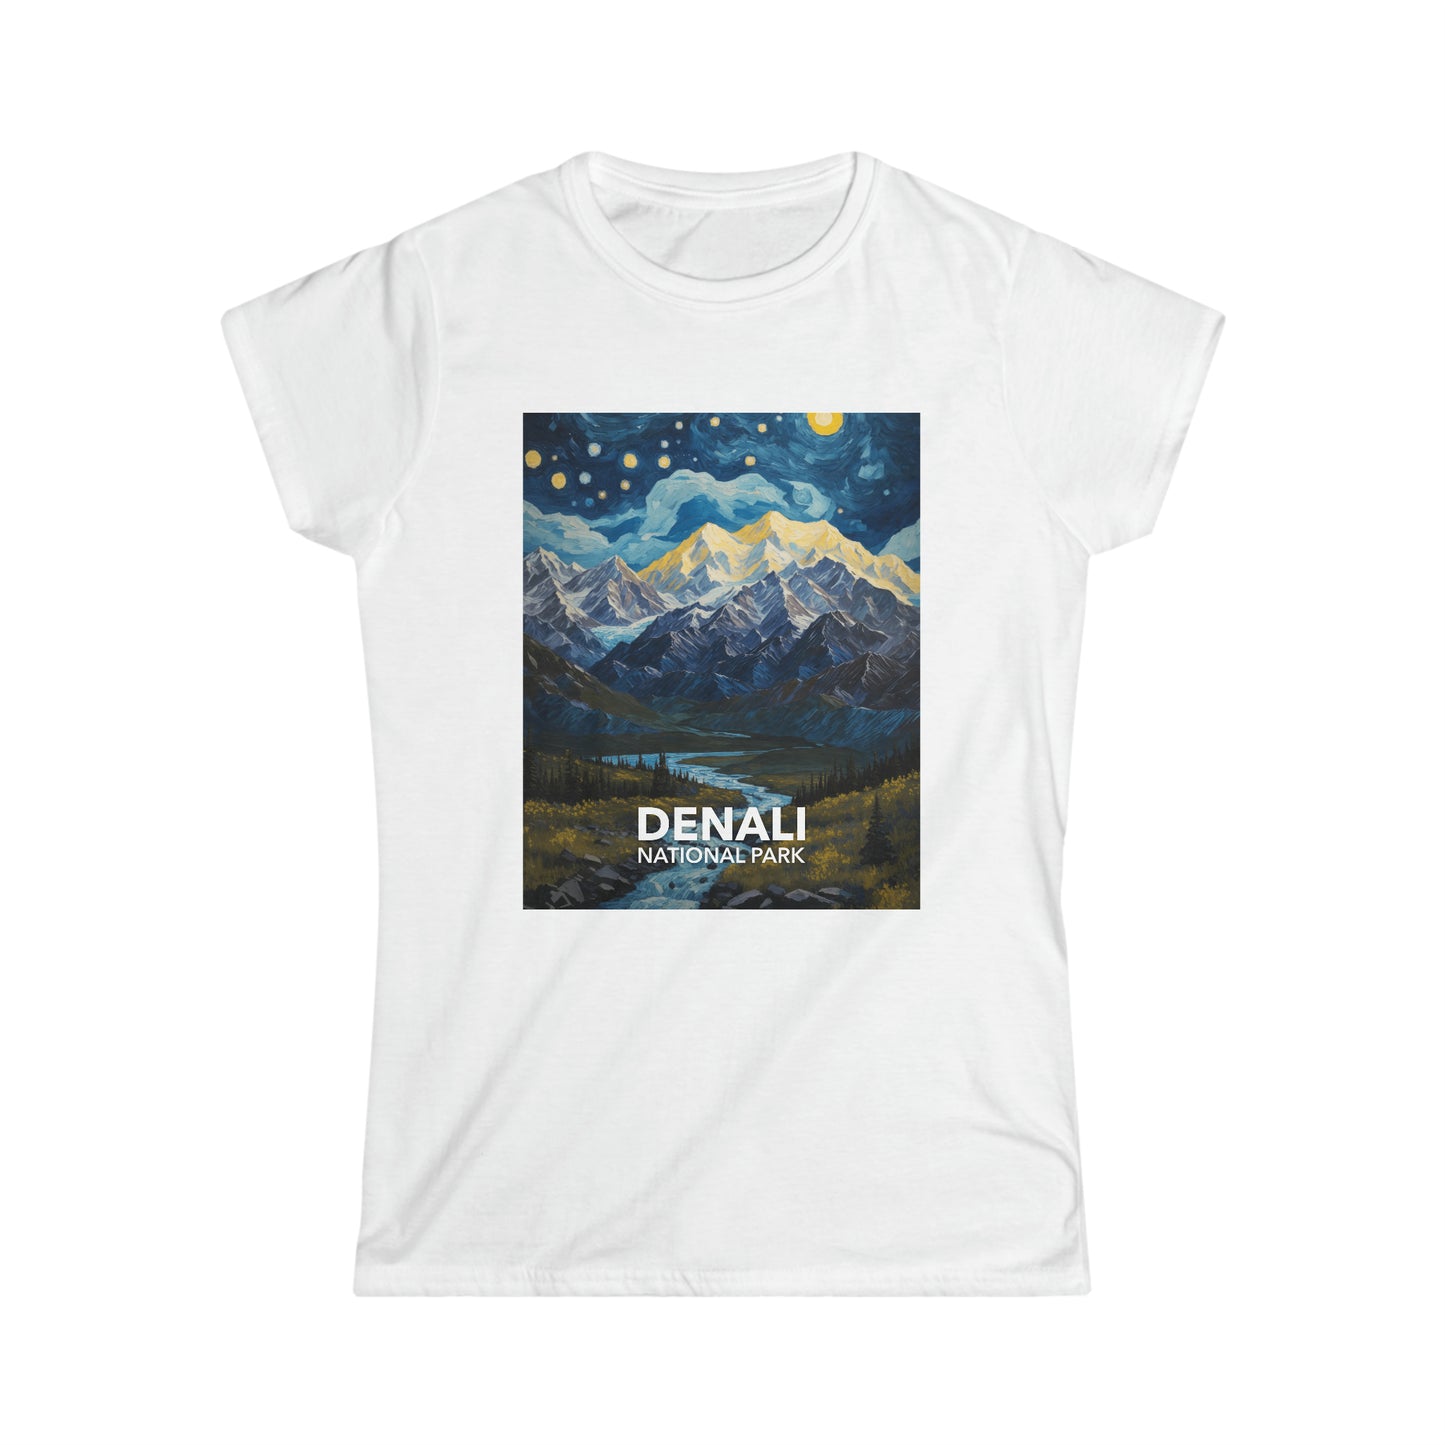 Denali National Park T-Shirt - Women's Starry Night